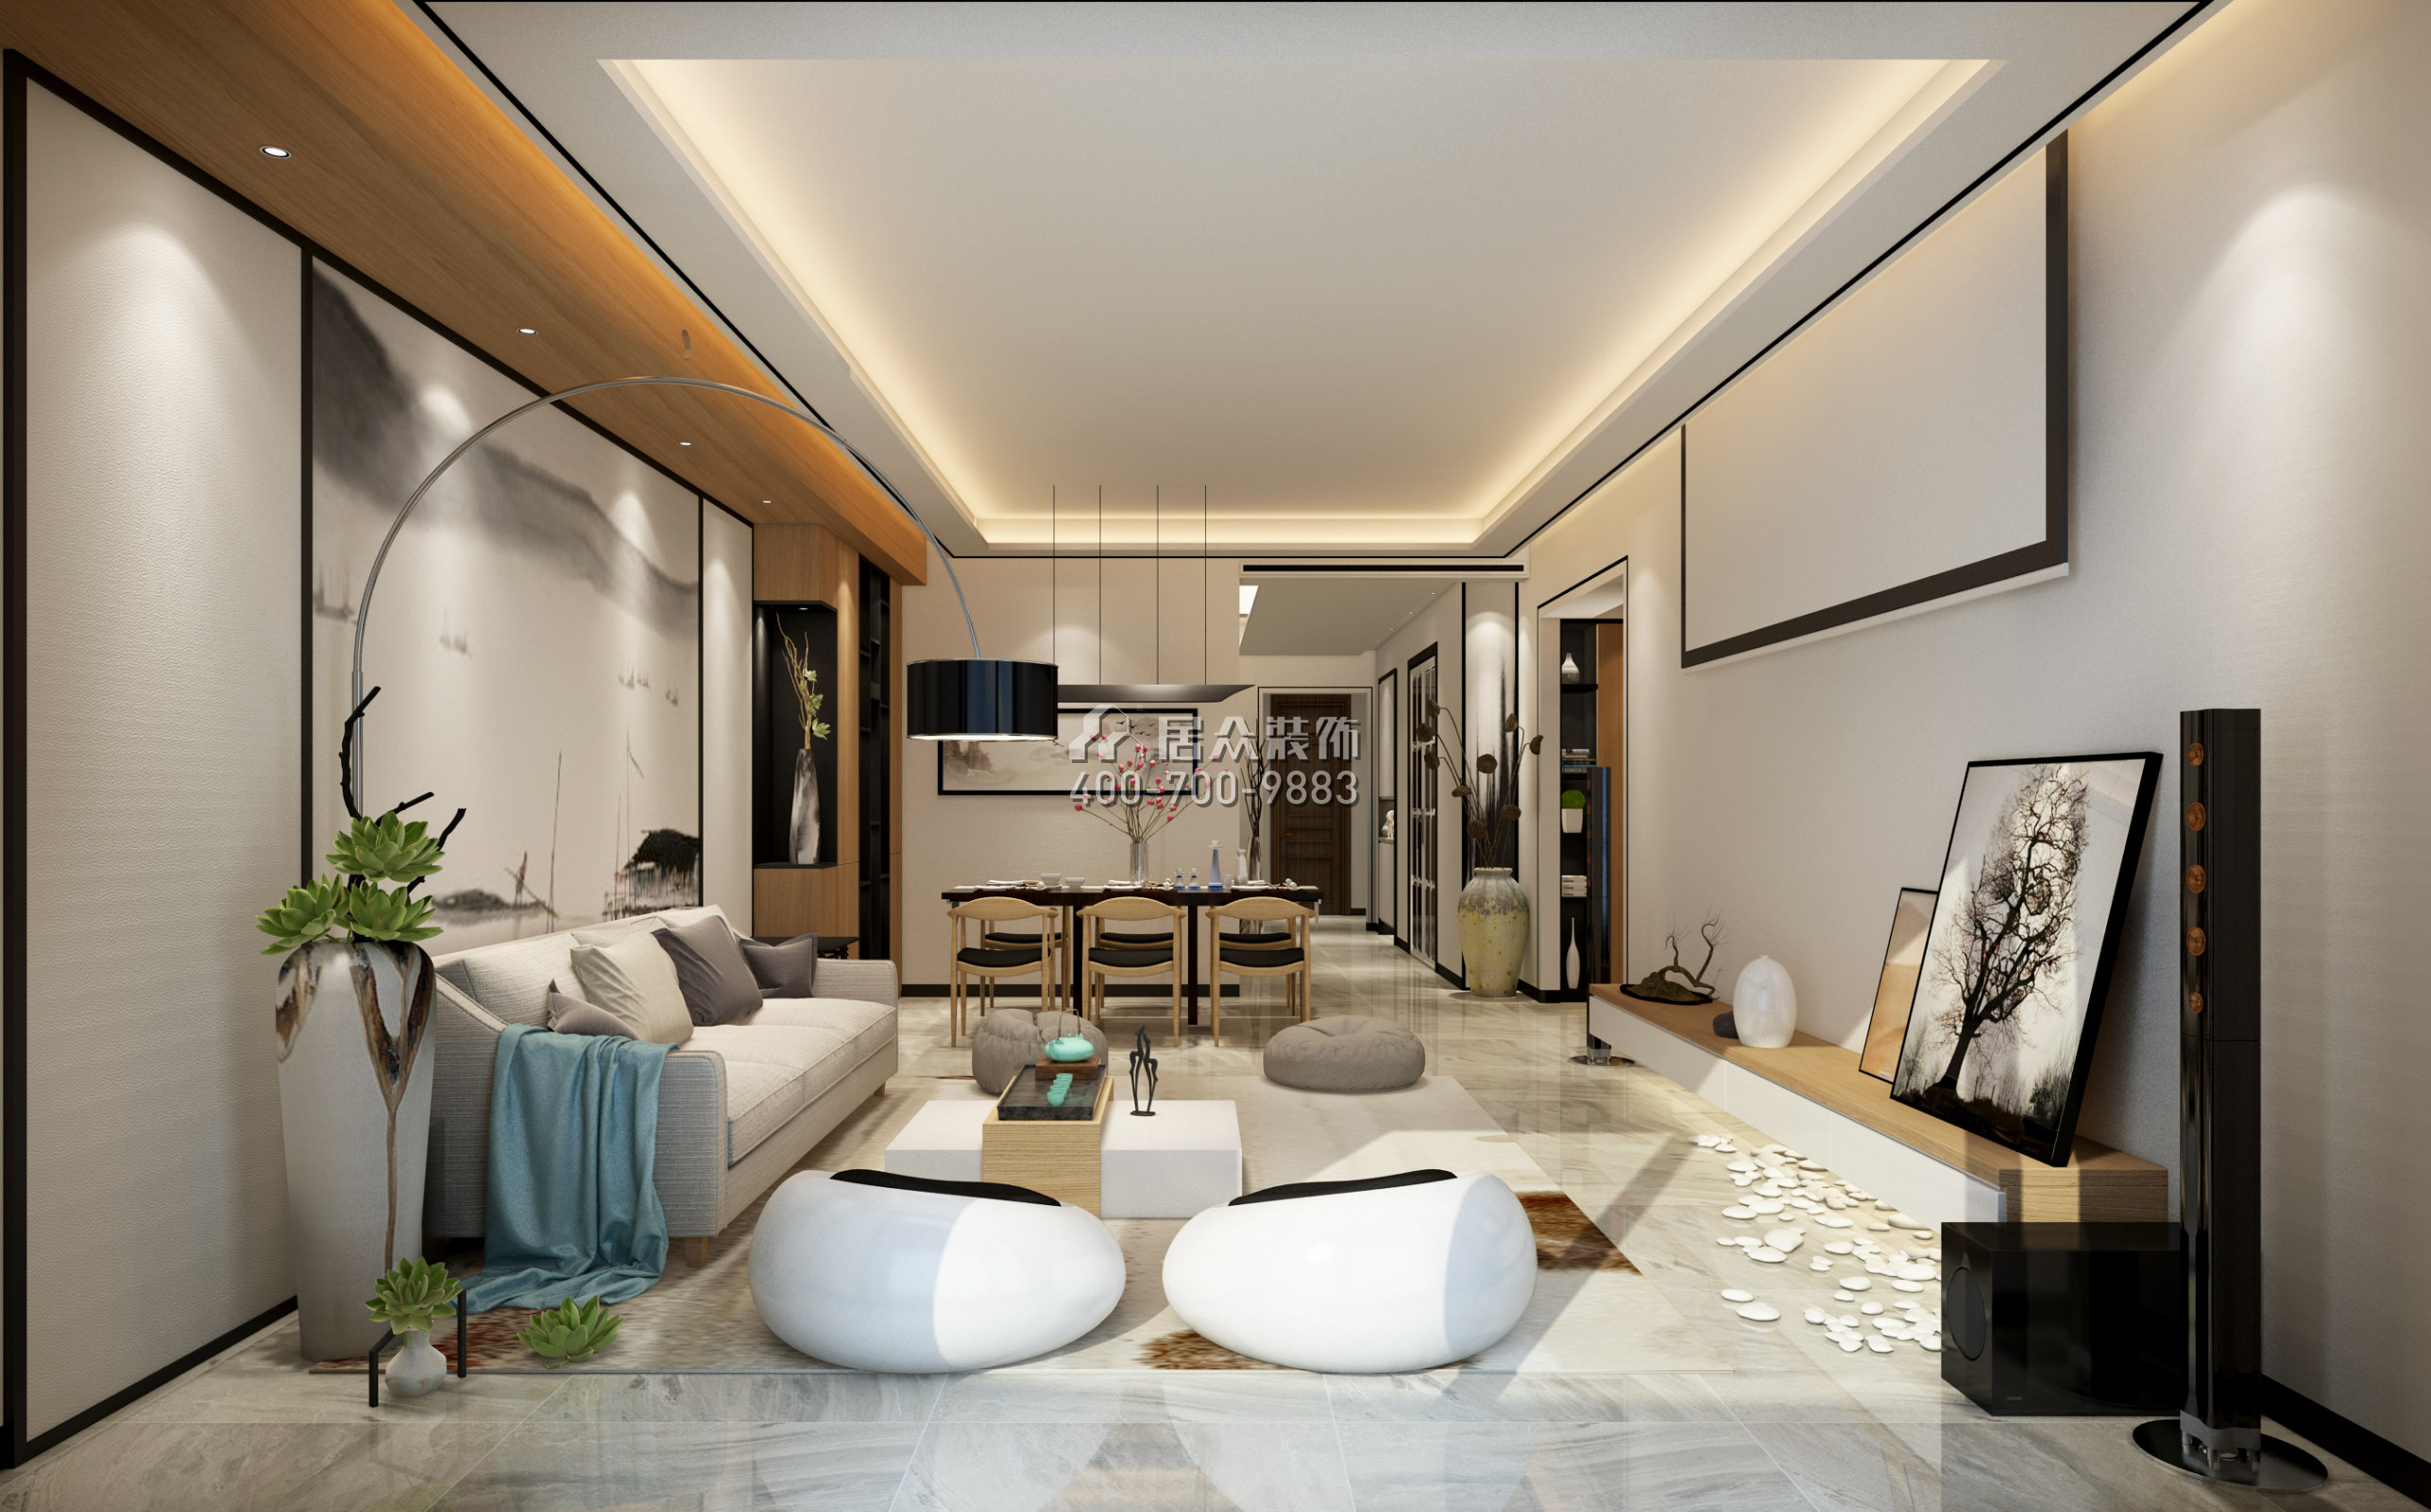 大康福盈门128平方米中式风格平层户型客厅装修效果图